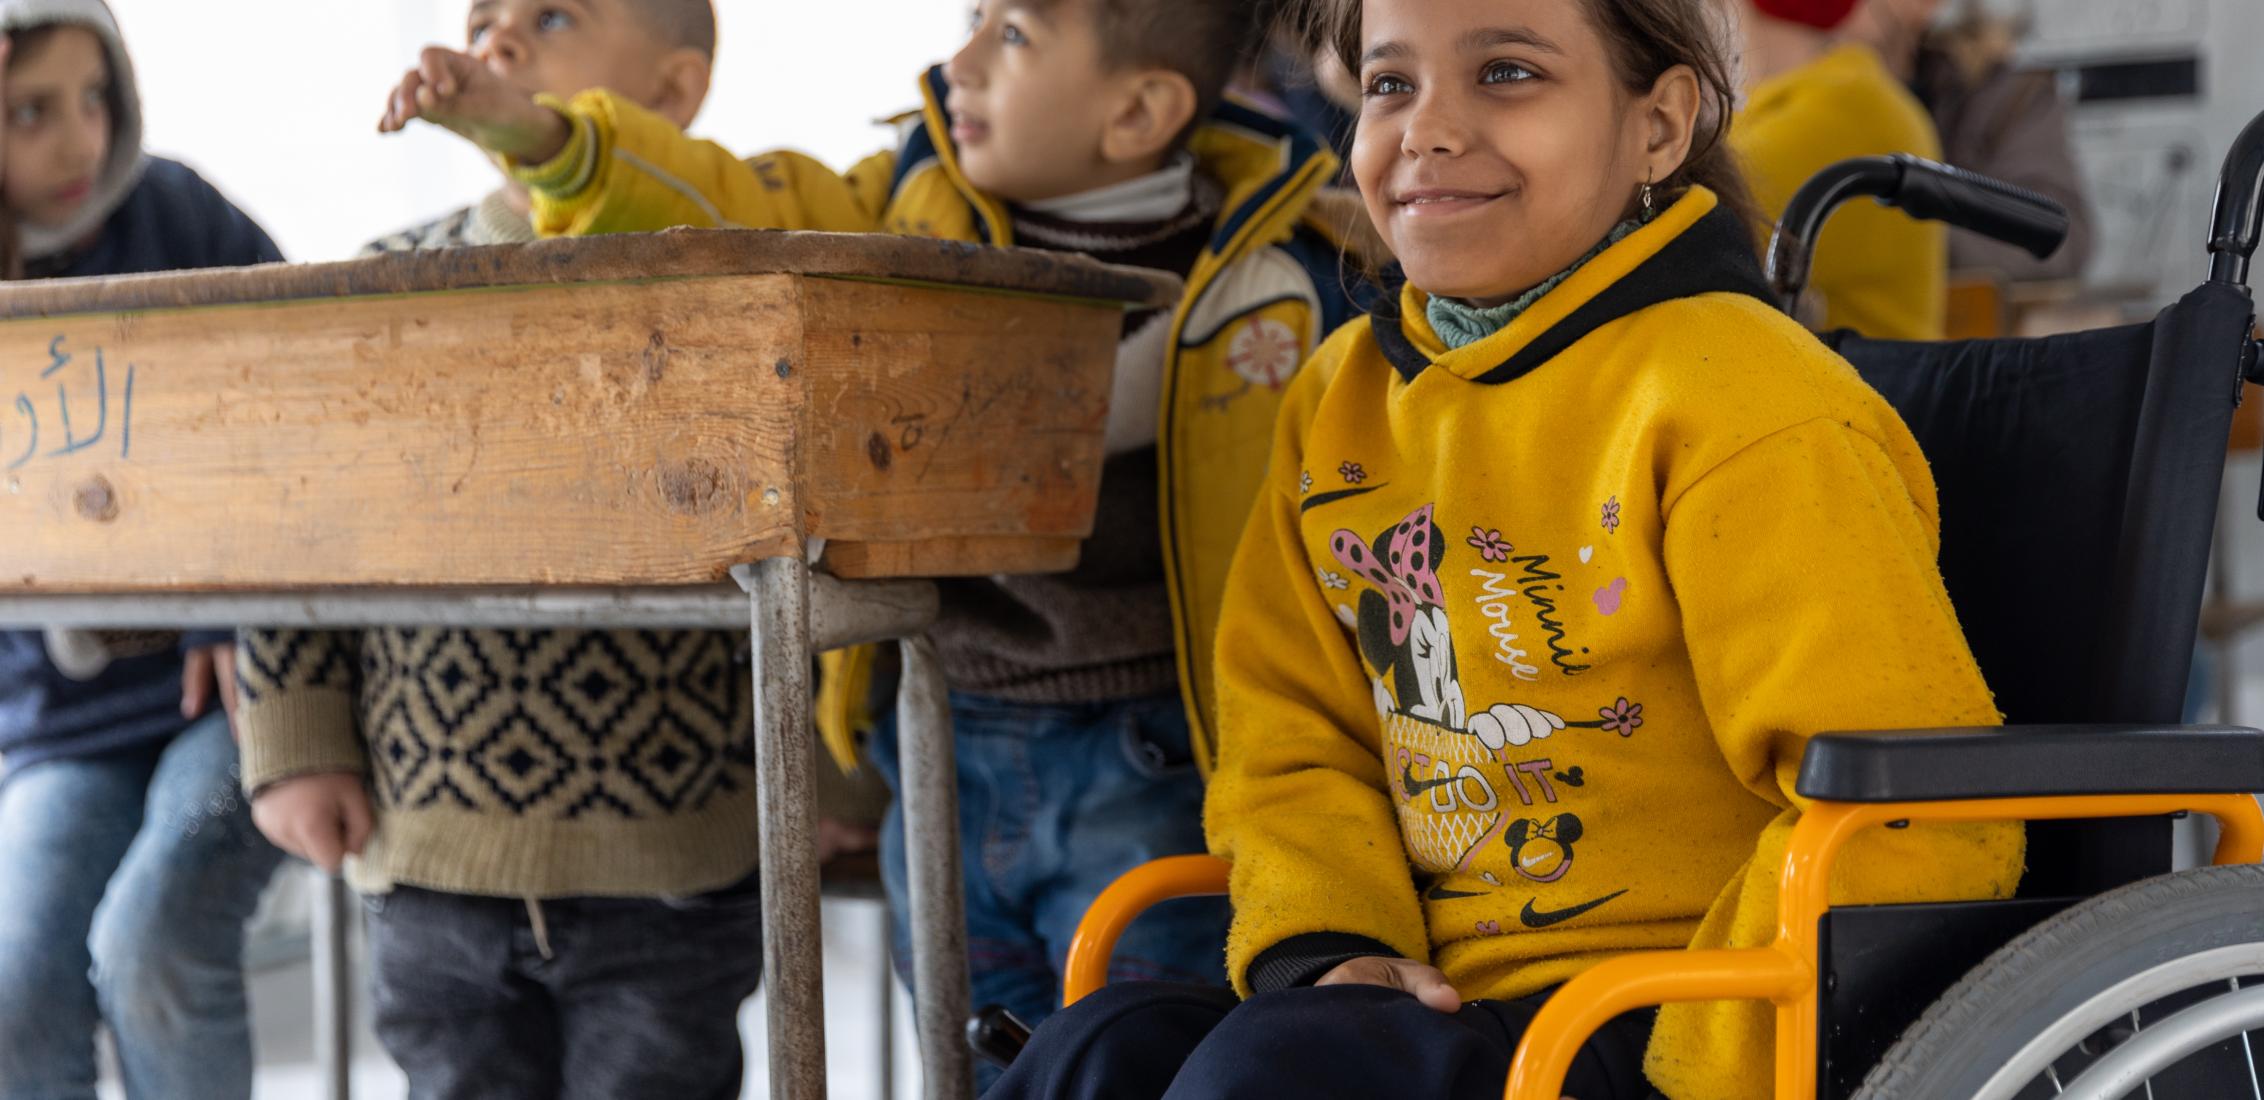 UN0855919/Janji Iman, 13 ans, participe à une activité éducative soutenue par l'UNICEF dans une école transformée en refuge dans la ville d'Alep, en Syrie, le 15 mars 2023. À Alep, l'une des zones largement touchées par les tremblements de terre meurtriers, l'UNICEF, avec ses partenaires, s'adresse aux enfants affectés, notamment aux enfants handicapés, en leur proposant des activités éducatives divertissantes et des cours de rattrapage pour les aider à rattraper les apprentissages manqués et à retrouver un